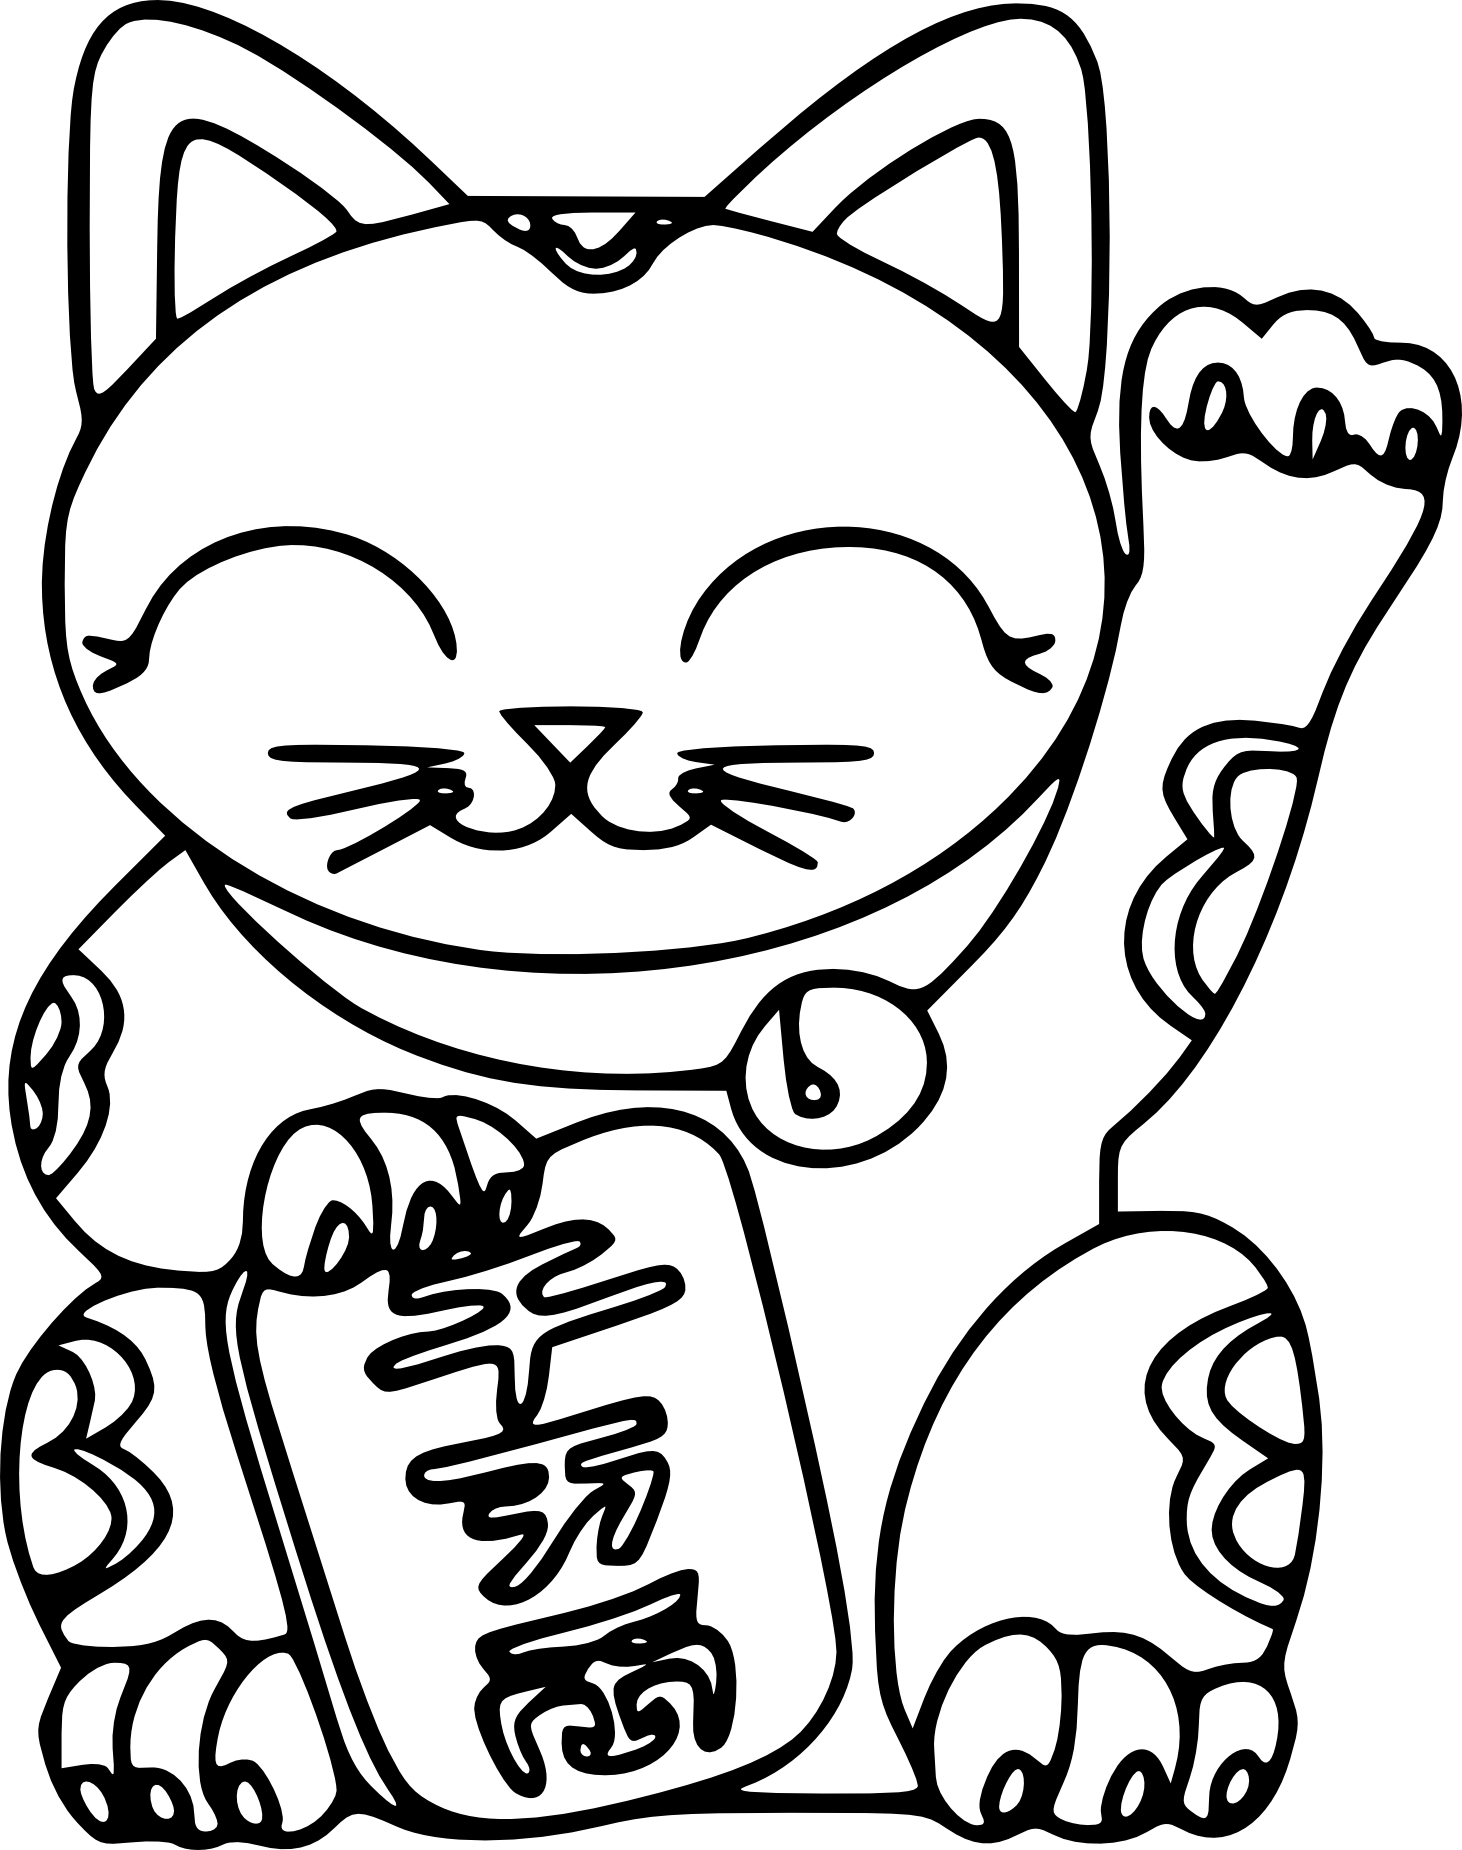 Maneki Neko coloring page